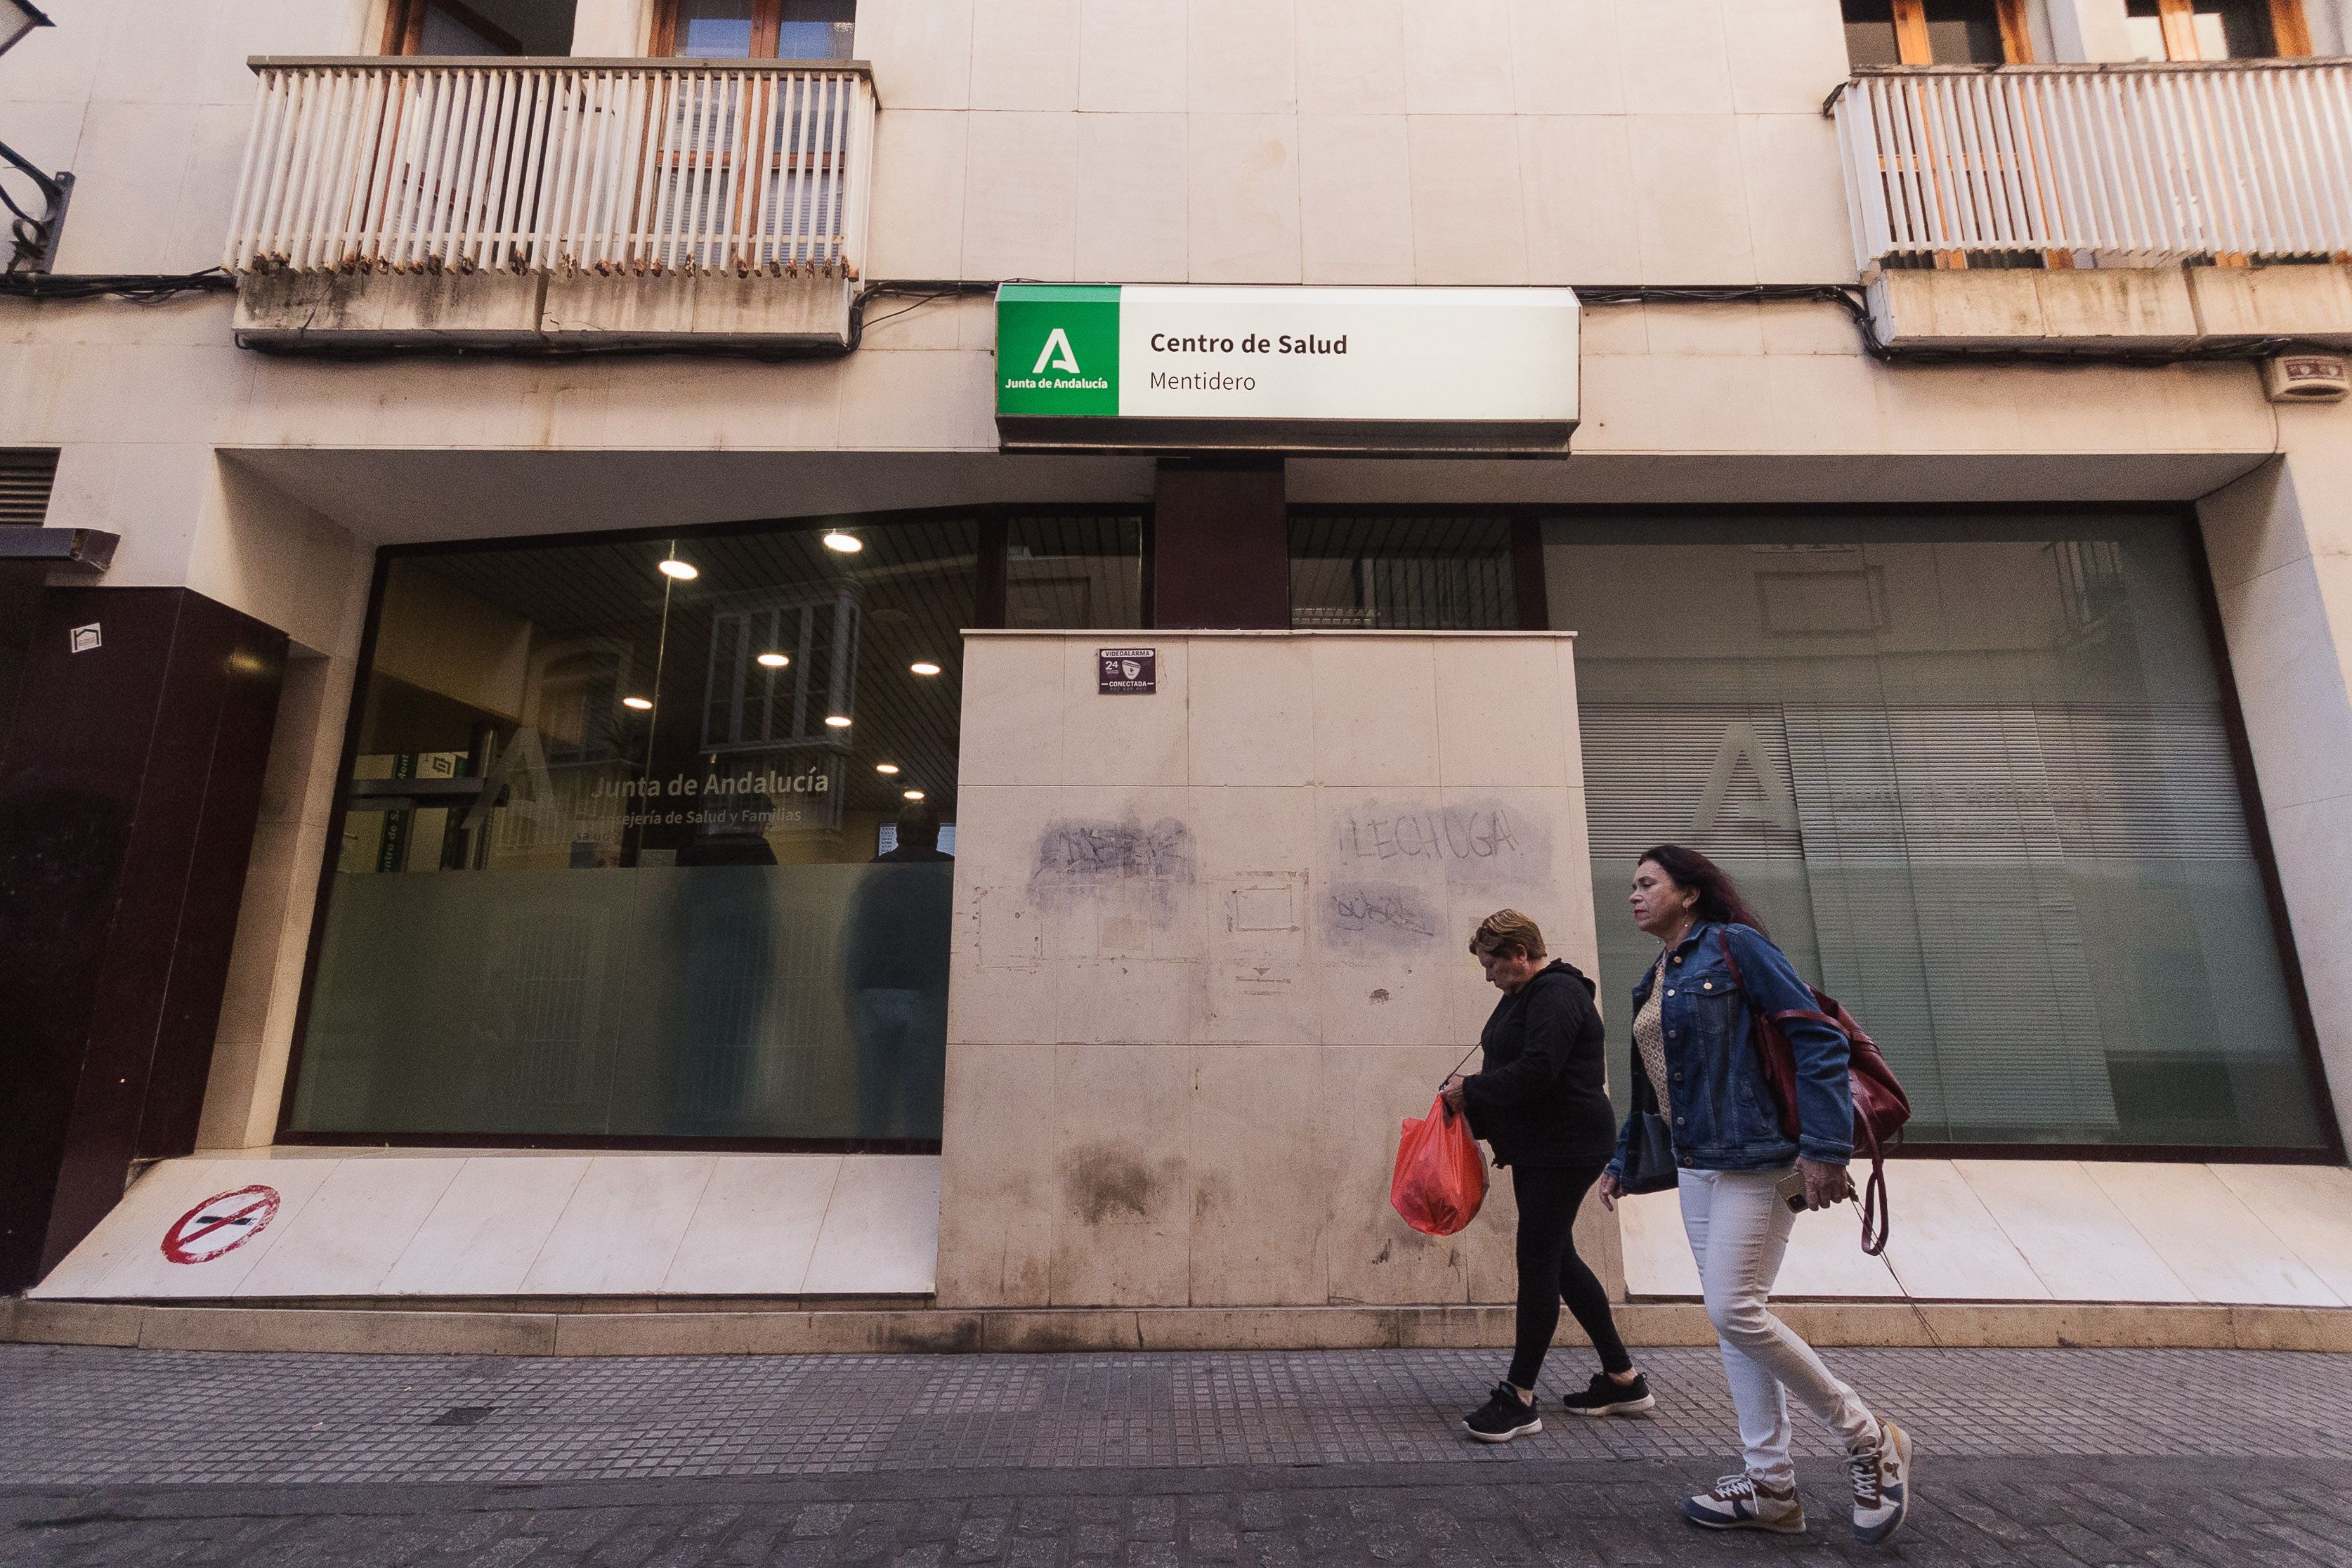 Arranca la huelga de facultativos de la Atención Primaria en centros de salud como El Mentidero, en Cádiz. 